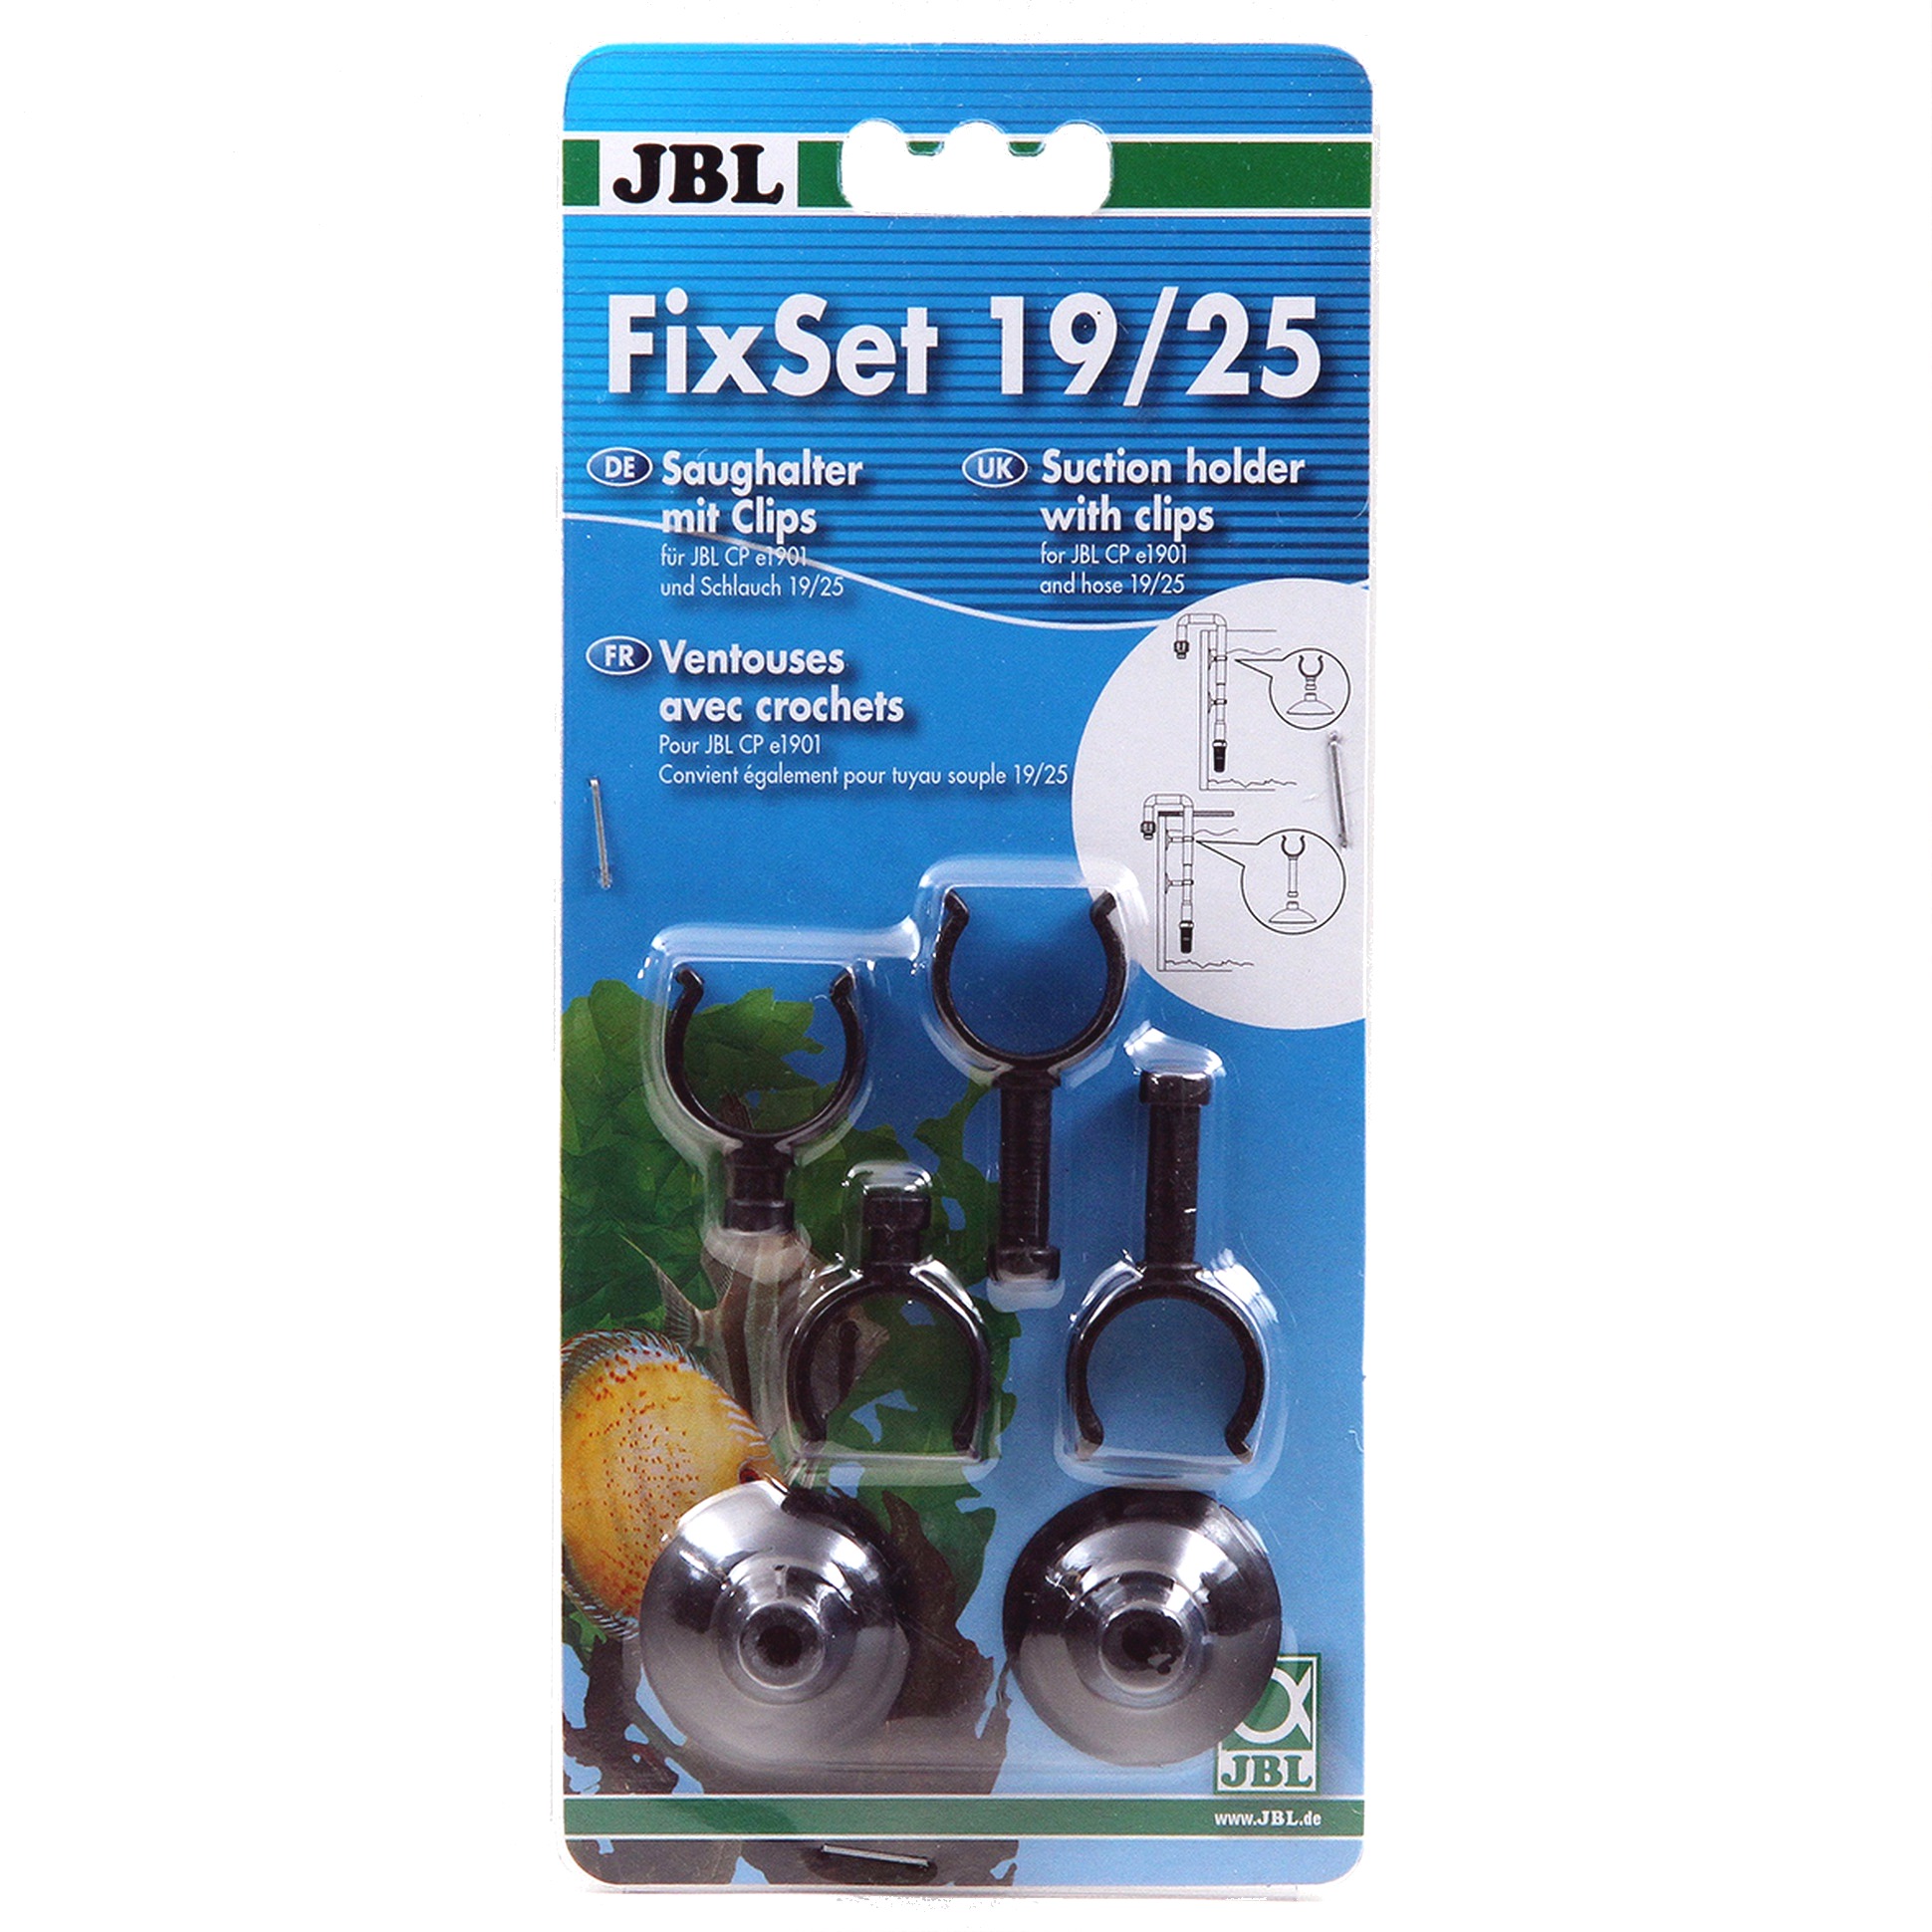 JBL FixSet 19/25 lot de 2 ventouses + 4 crochets pour tuyau de 19/25 mm et filtre externe JBL e1901